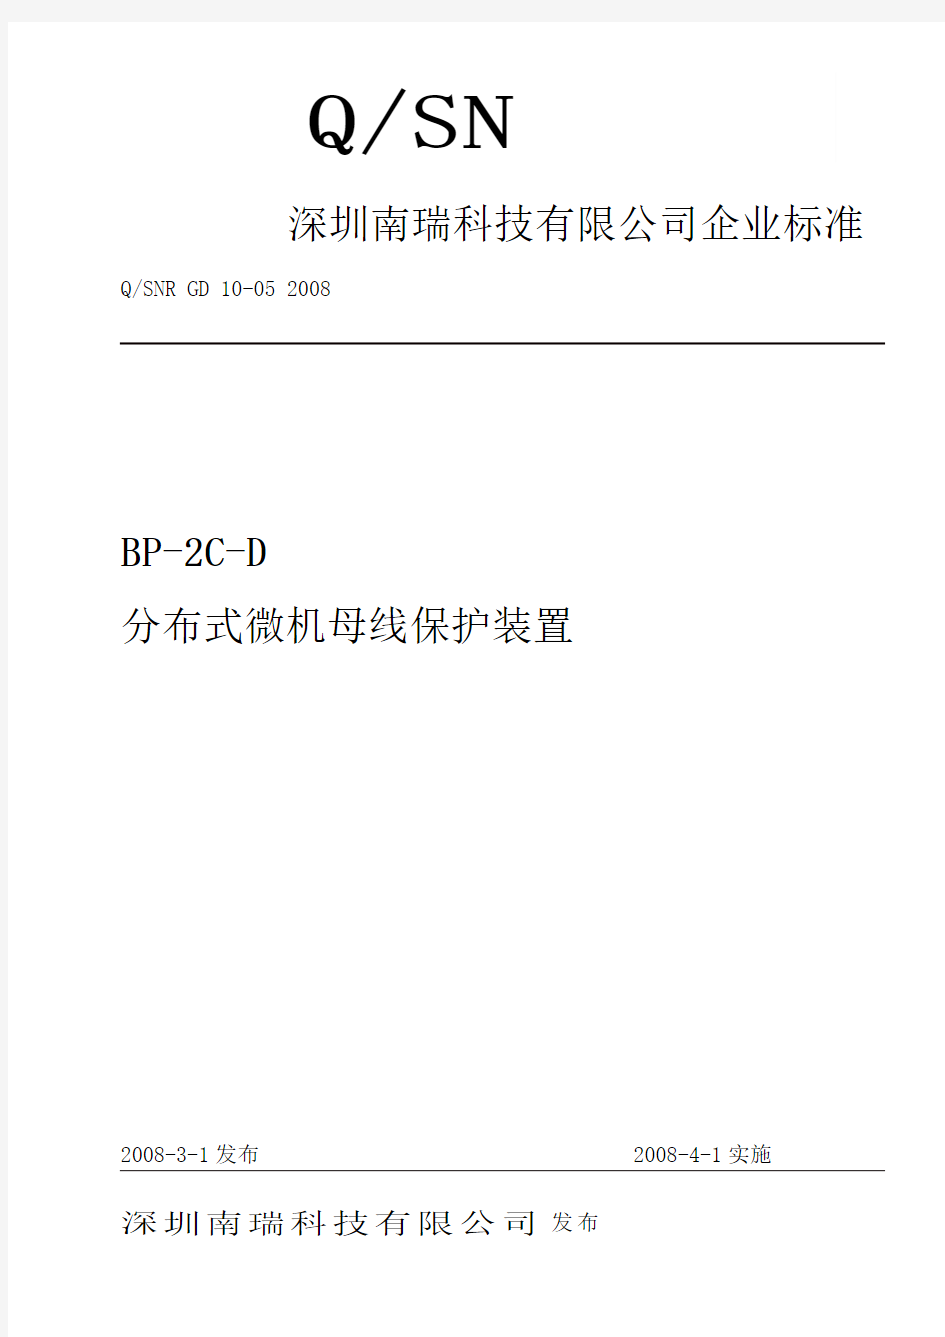 深圳南瑞科技有限公司BP-2C-D分布式微机母线保护装置企业标准